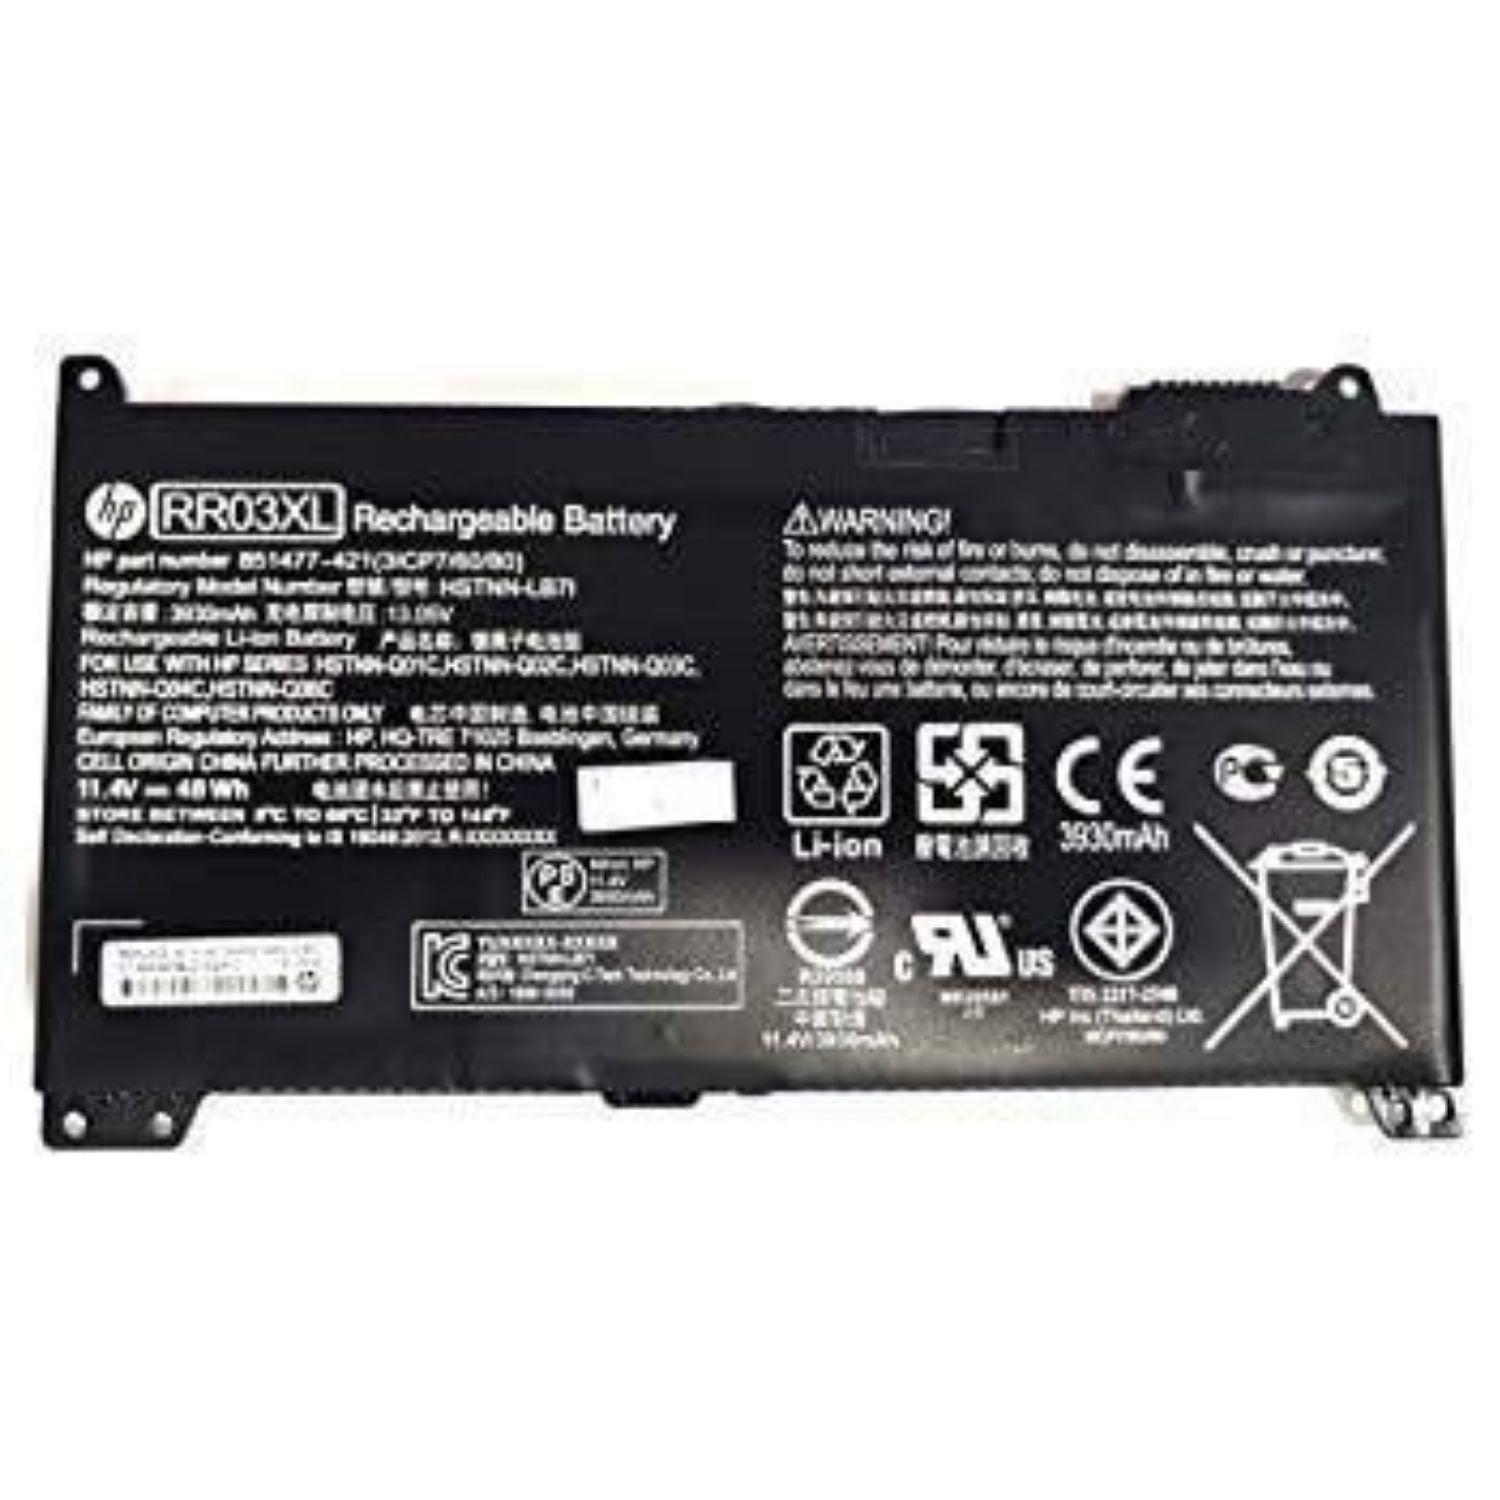 HP RR03XL Battery For ProBook 430 440 450 455 470 G4 G5 851610-850 851477-421 851477-541 HSTNN-PB6W HSTNN-UB7C HSTNN-LB7I HSTNN-Q06C Serie's Laptop.